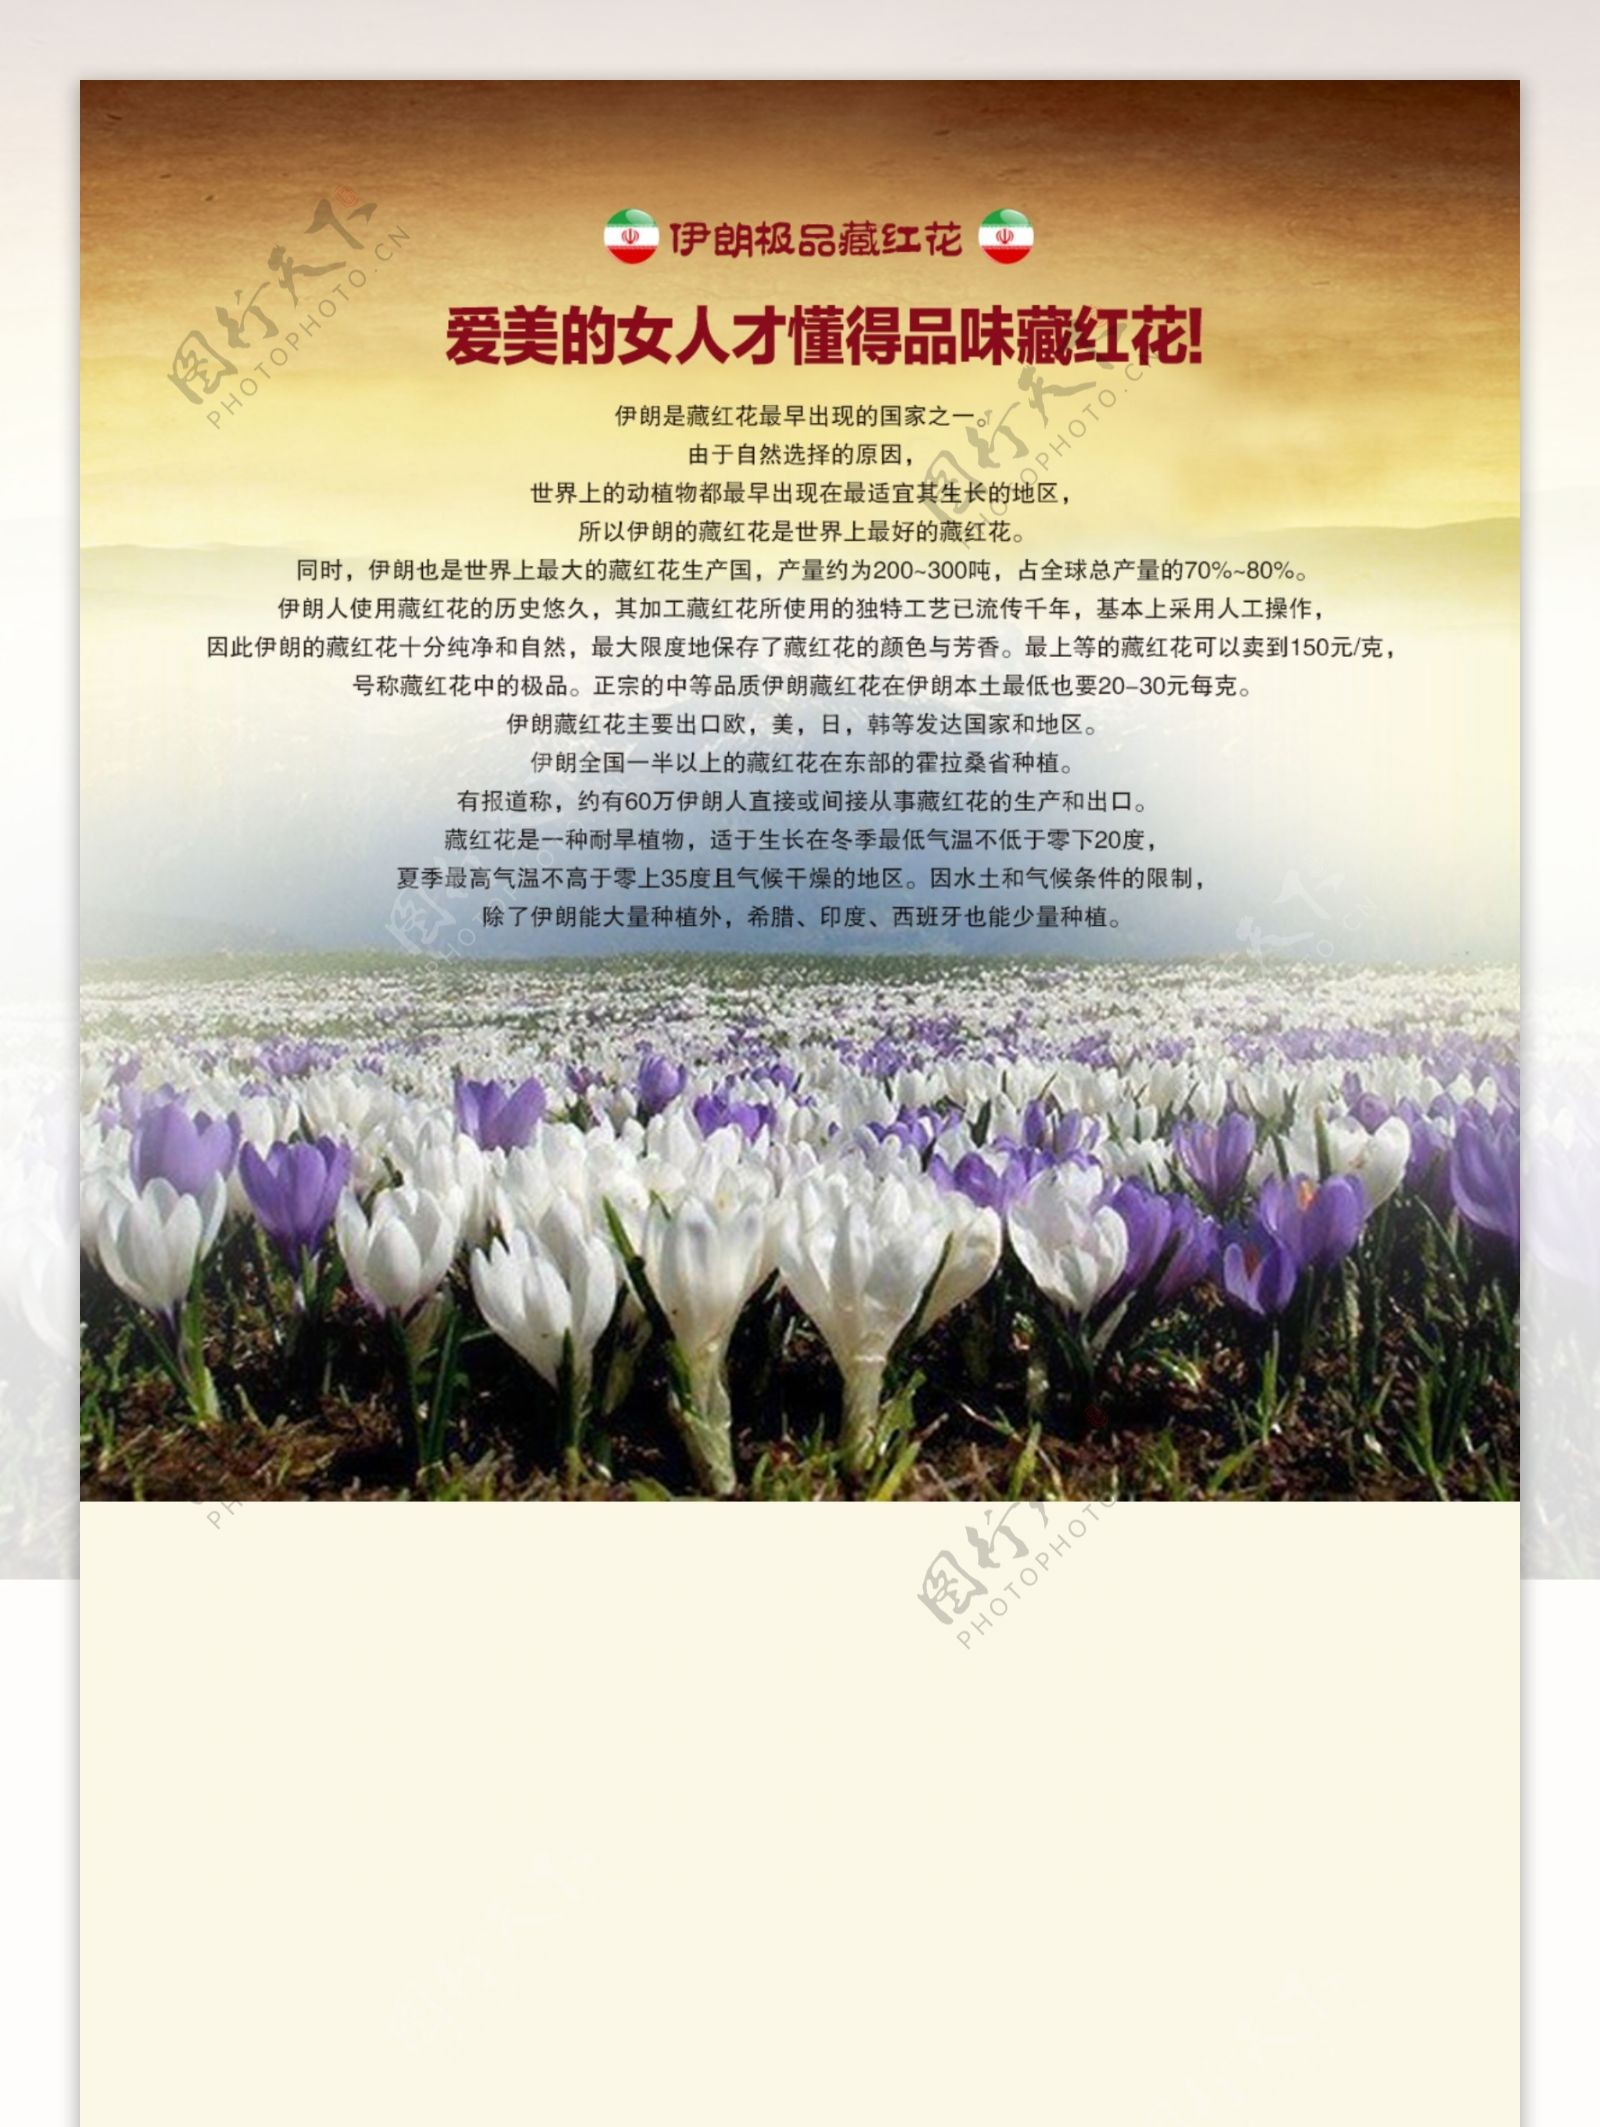 藏红花网站首页